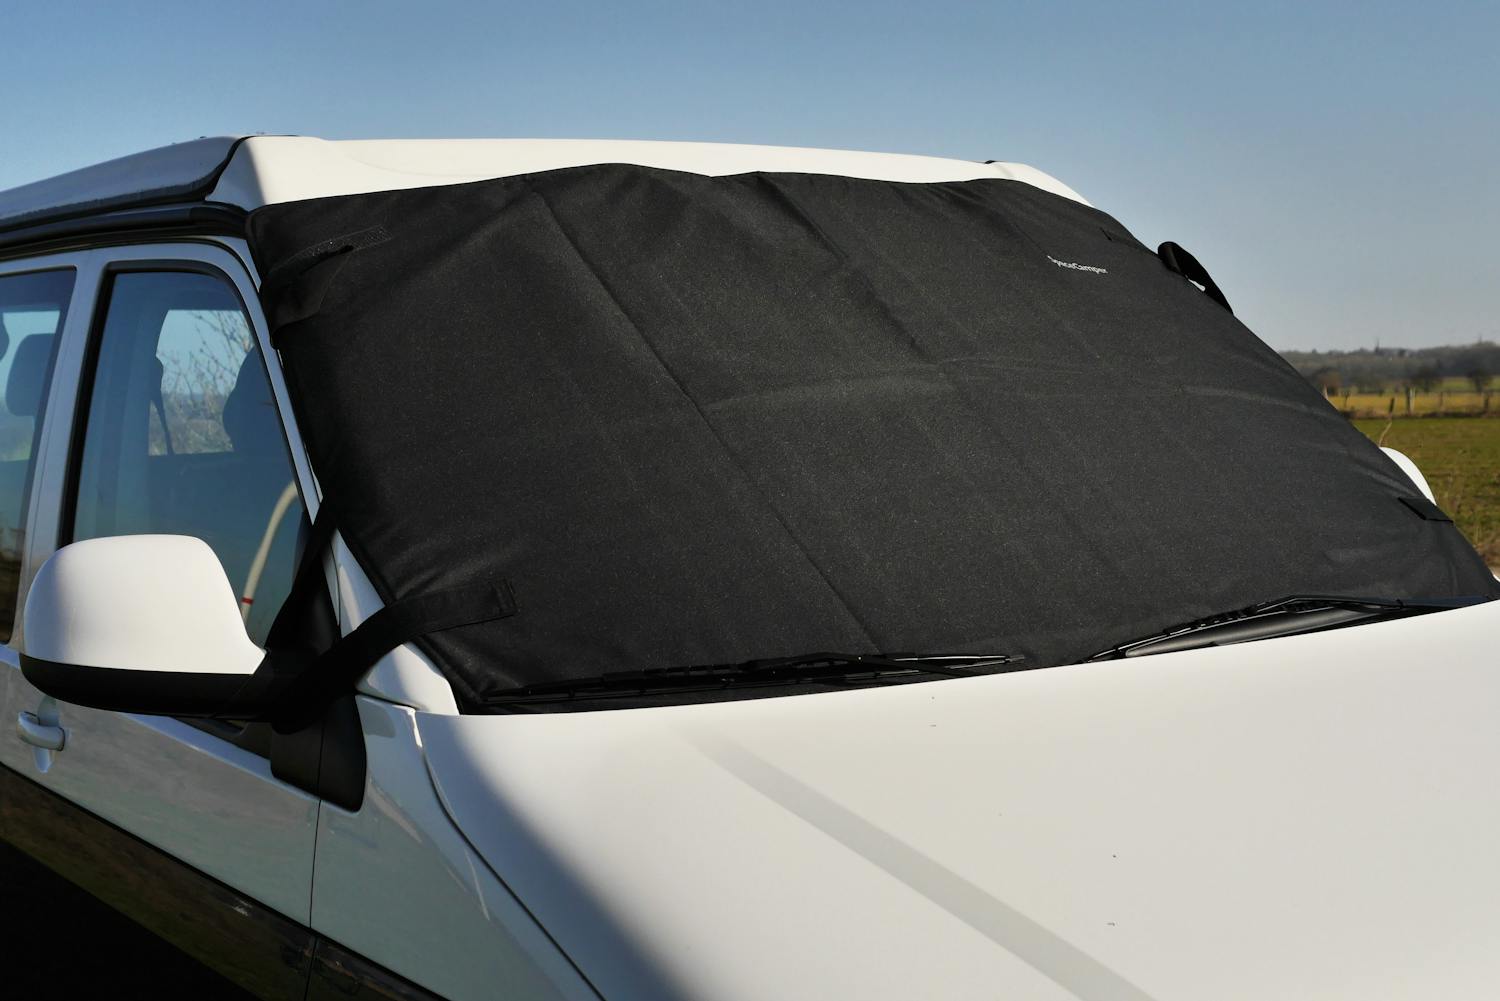 Fahrerhausverdunkelung - SpaceCamper - Frontschutz - passend für VW T5 und VW T6